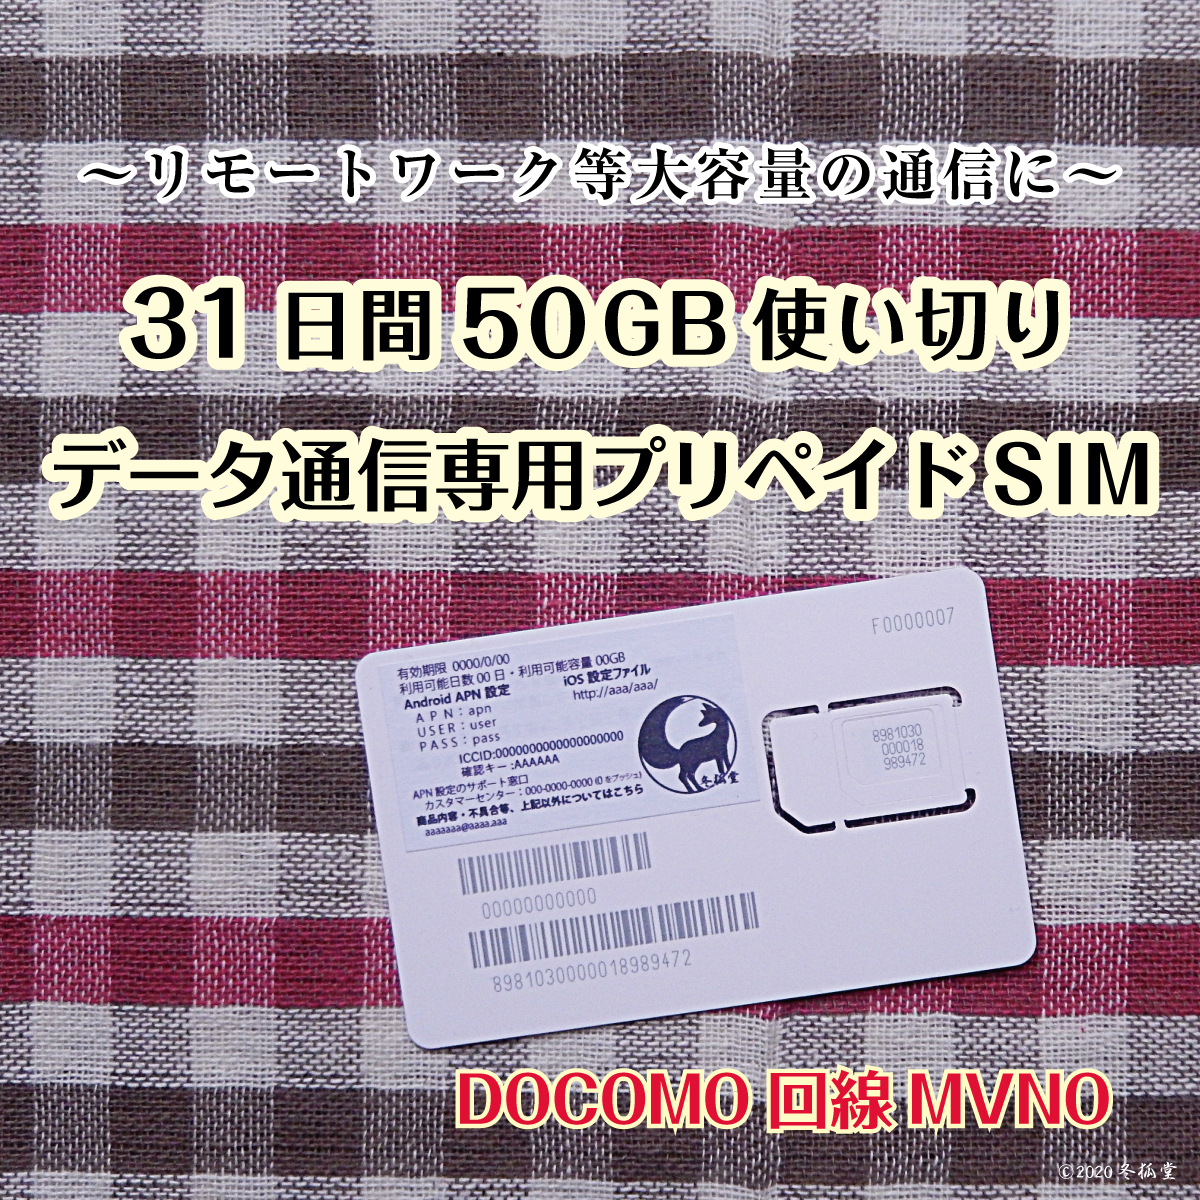 11037円 驚きの値段 SMS 付き 日本 プリペイドSIM 3GB 月1年間有効 Docomo回線 4G-LTE対応 データ通信専用SIMカード